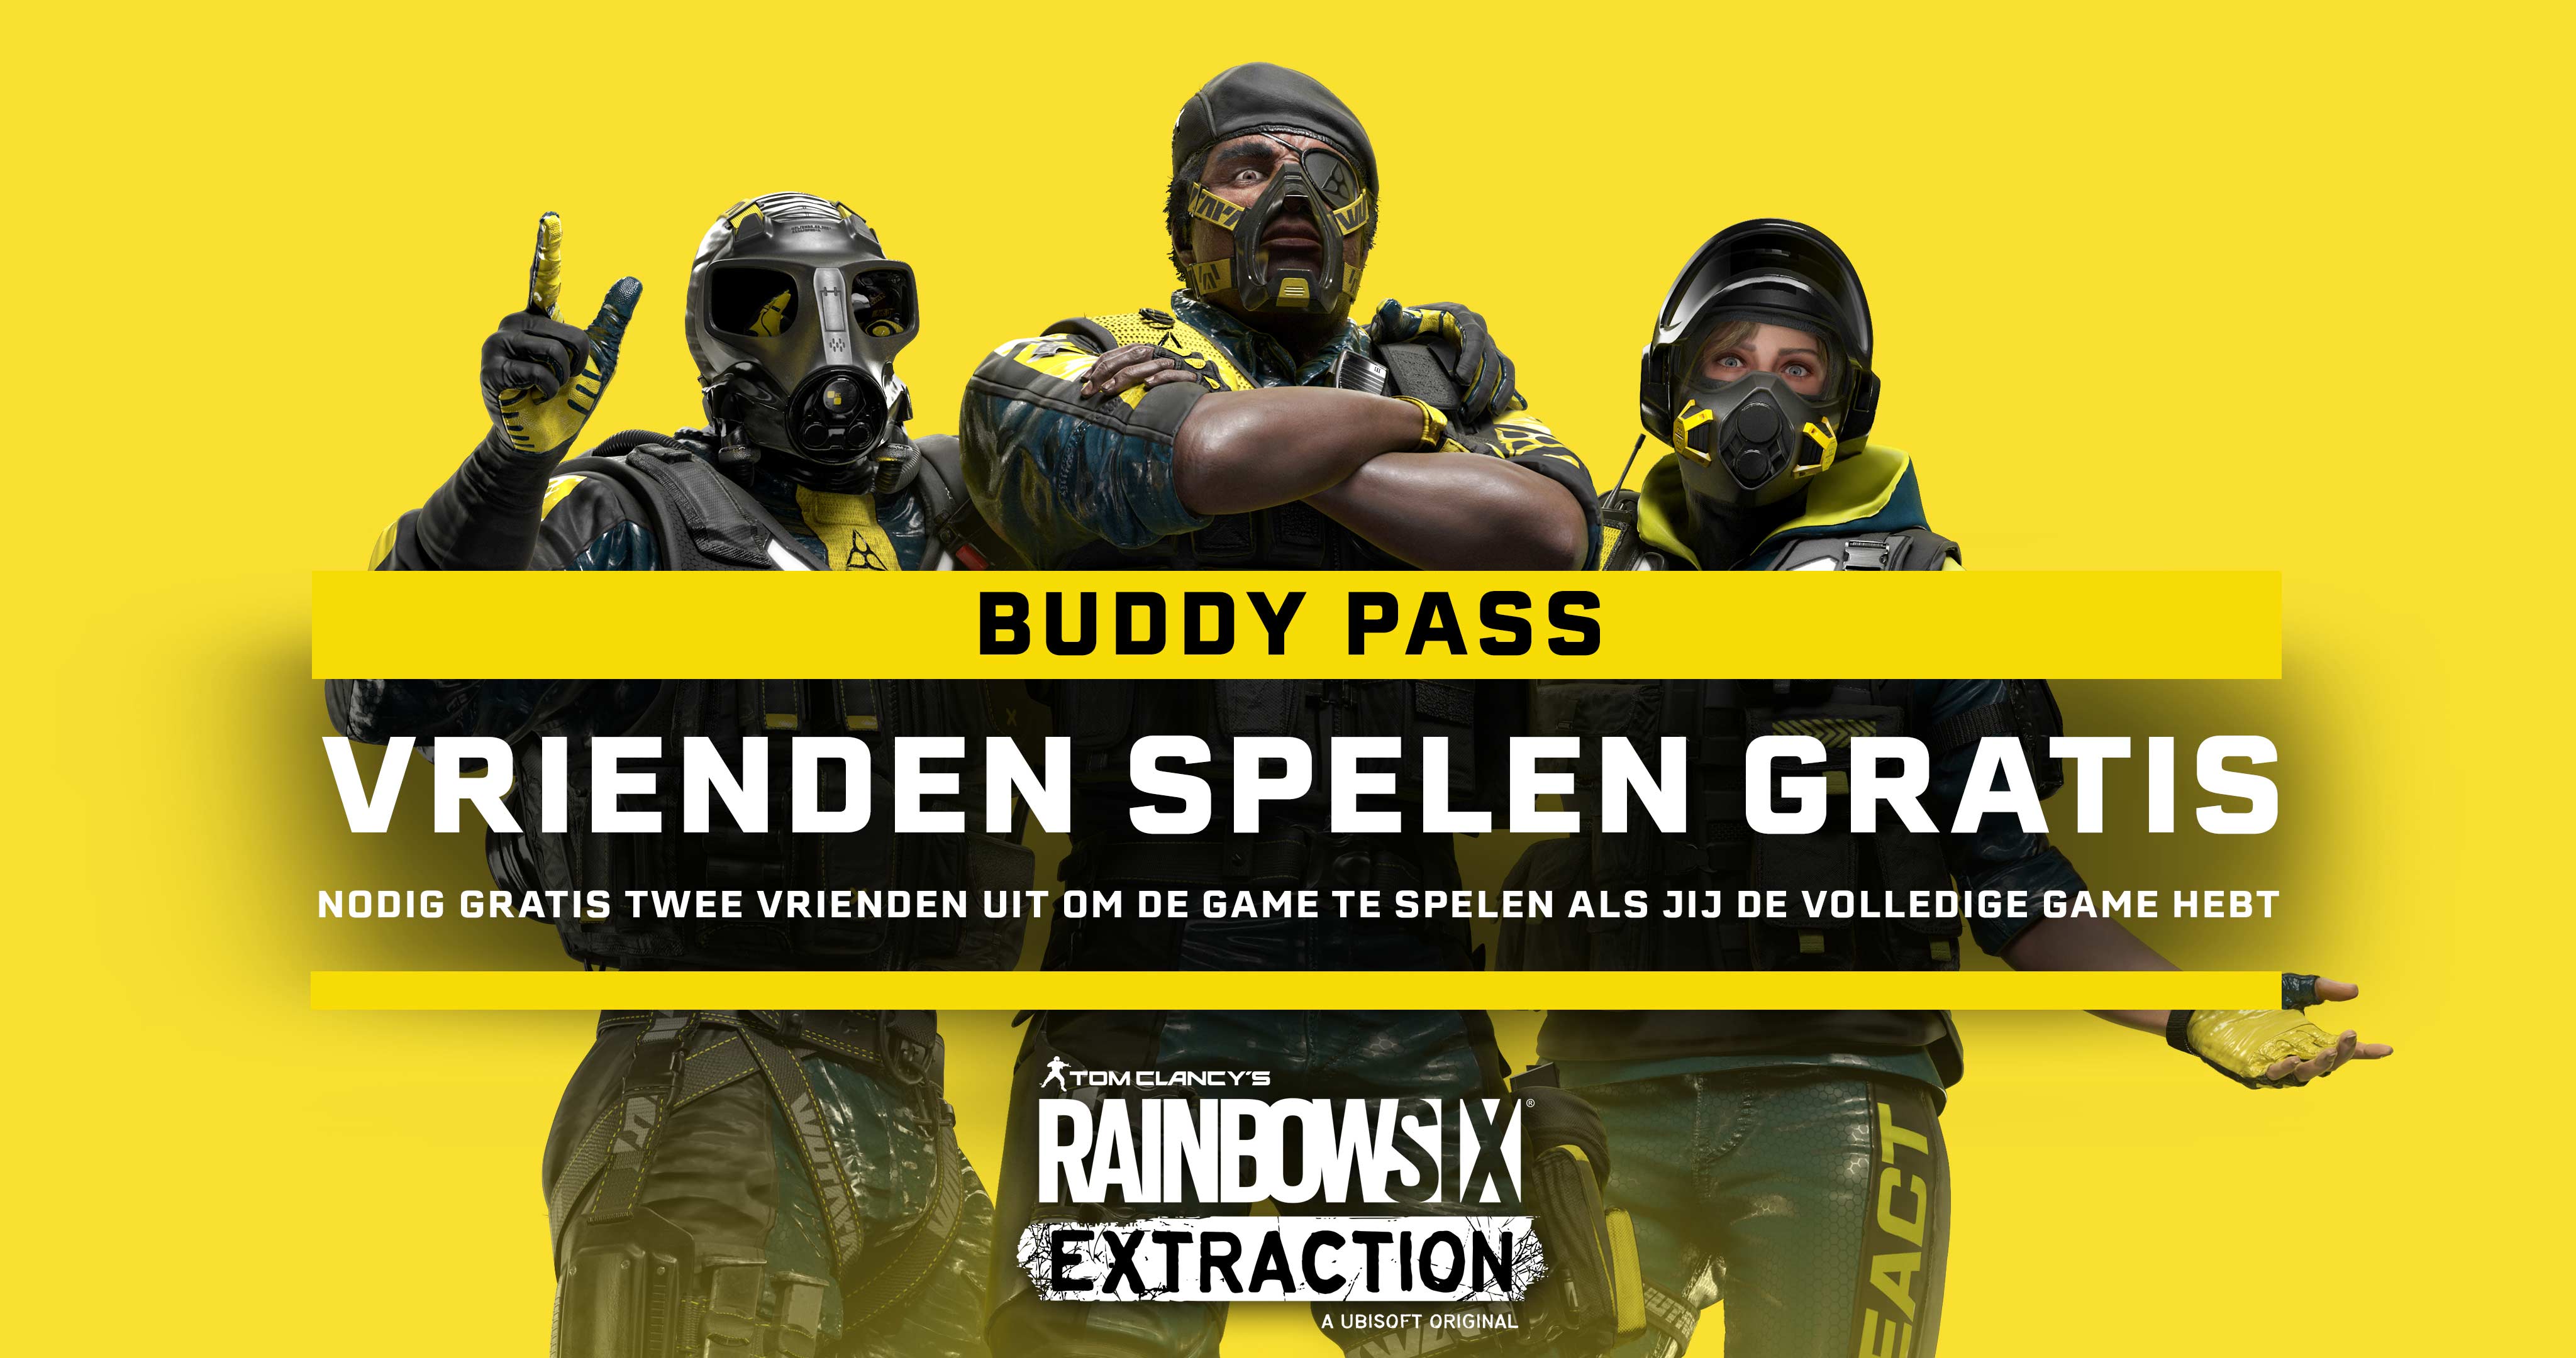 De Buddy Pass is een functie die aanwezig is in iedere volledige versie van Rainbow Six Extraction, waarmee je 14 dagen lang met twee vrienden op ieder platform kunt spelen, zelfs als zij het spel niet bezitten.